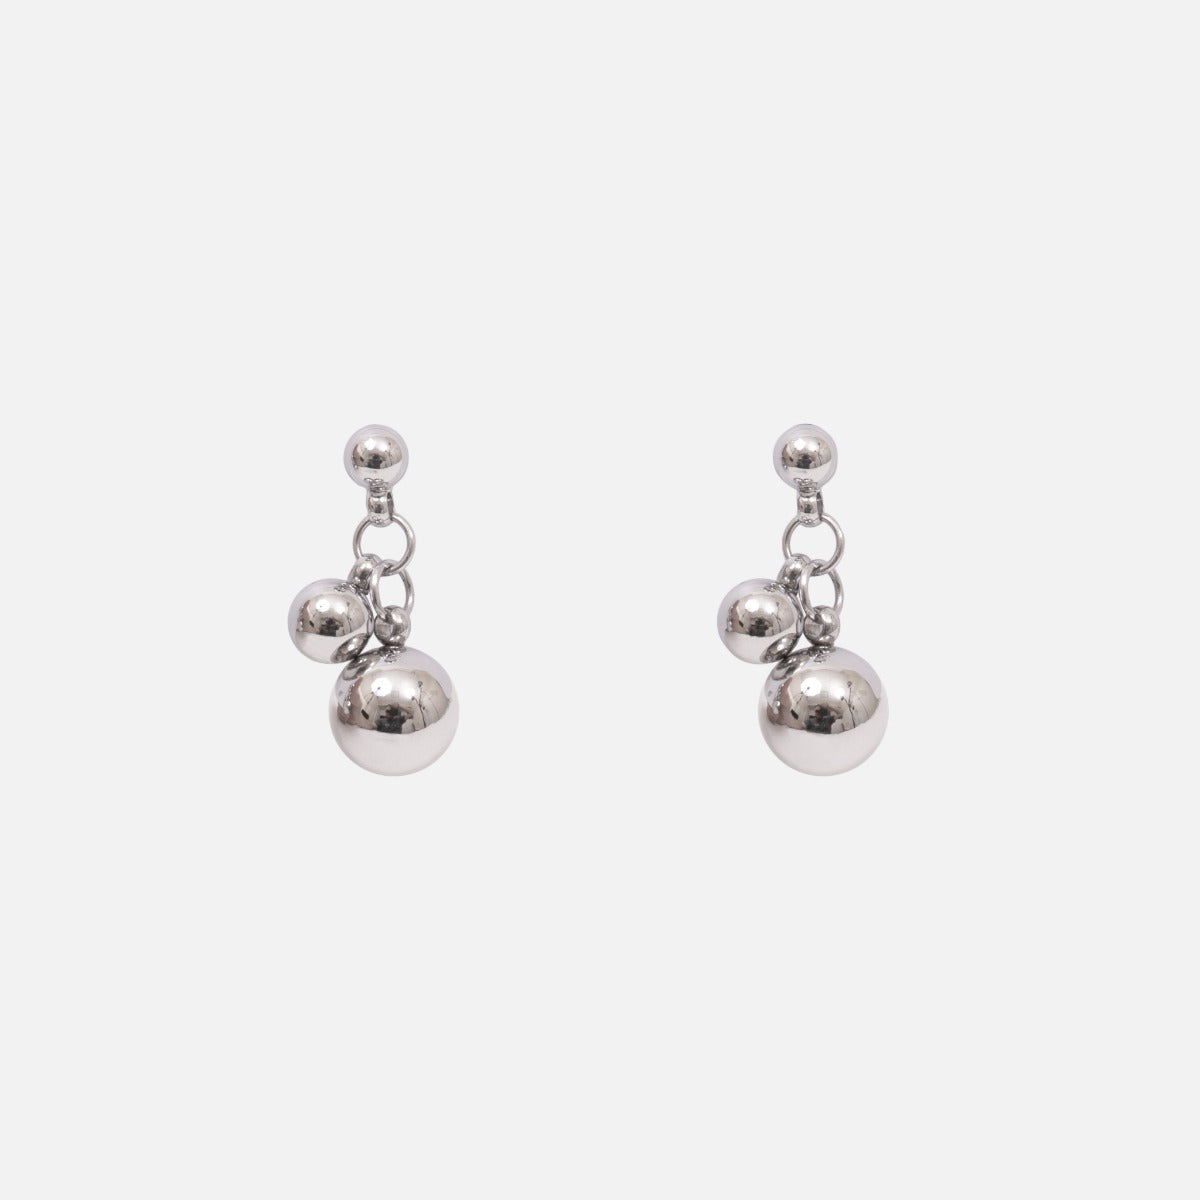 Petites boucles d’oreilles fixes avec trois perles argentées en acier inoxydable